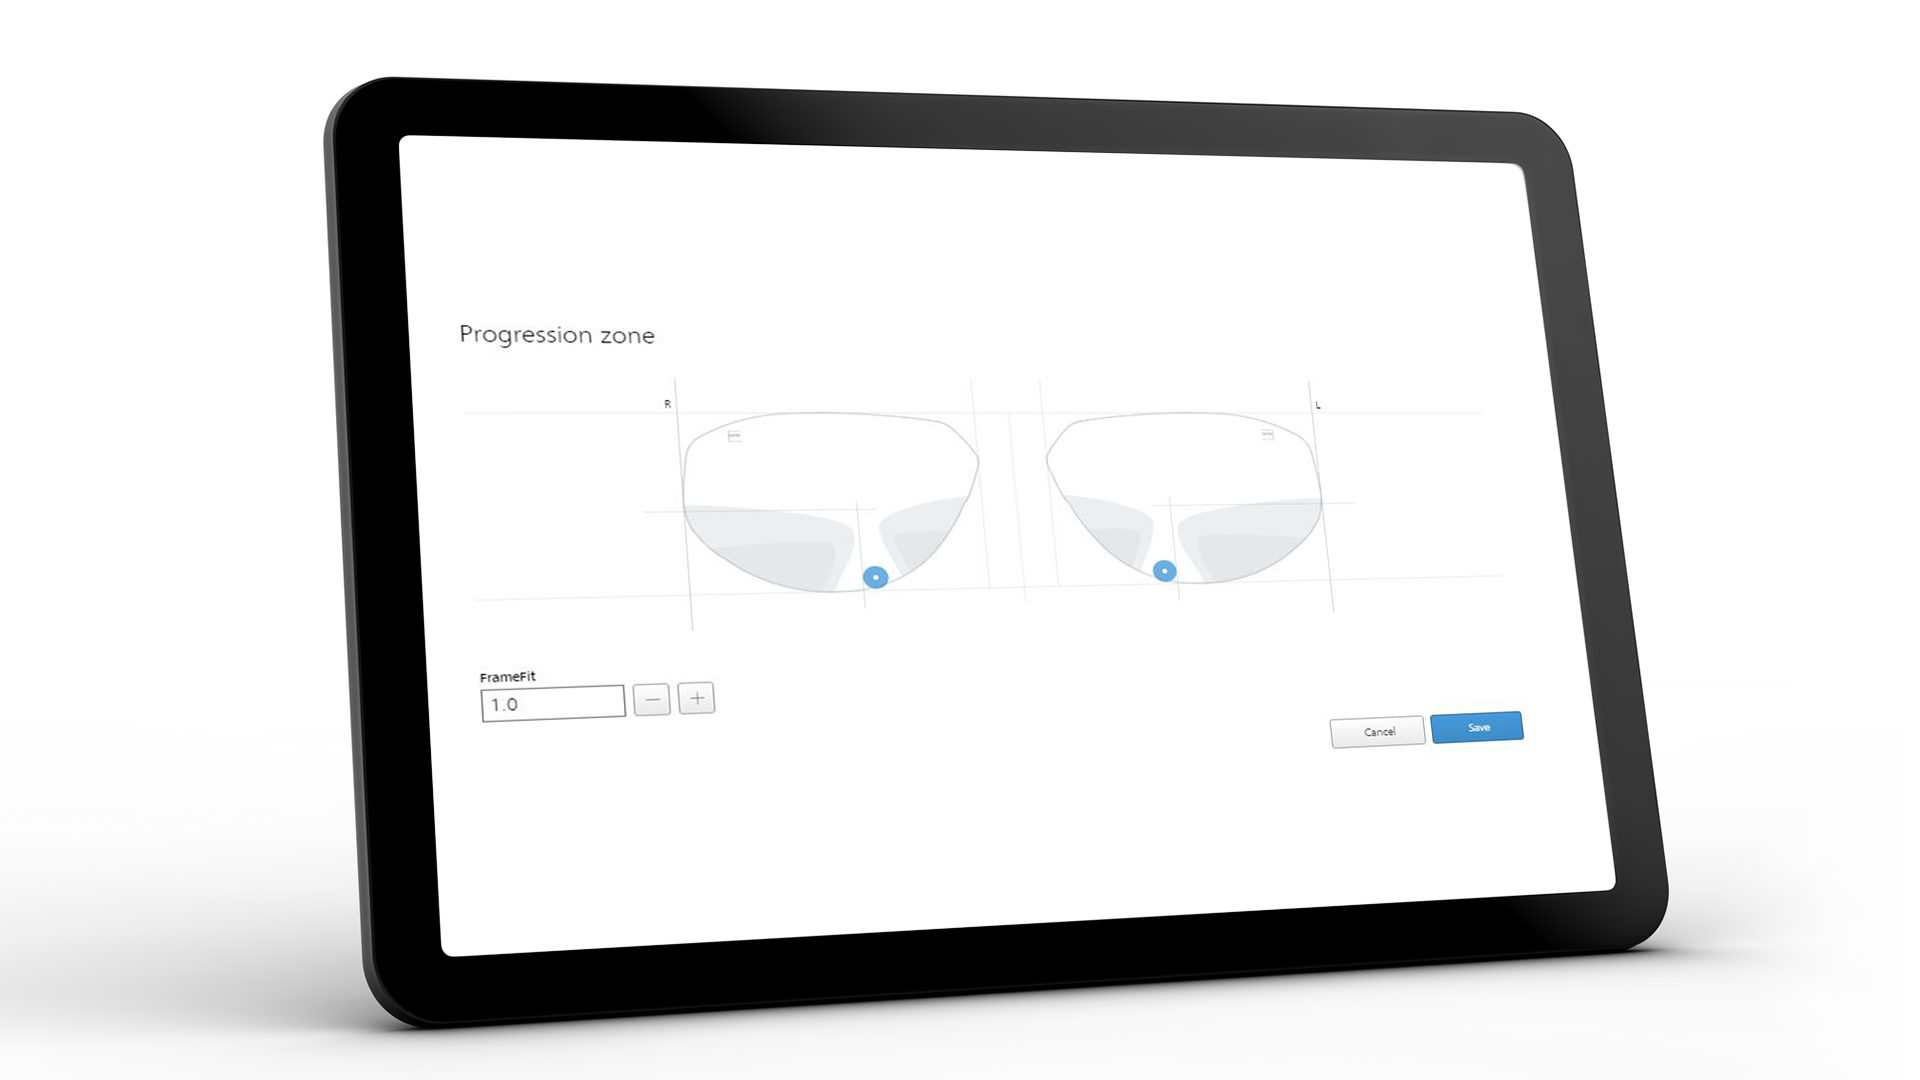 A ZEISS VISUSTORE kezelői felületet mutató tablet képernyője a progresszív zóna megjelenítése esetén 